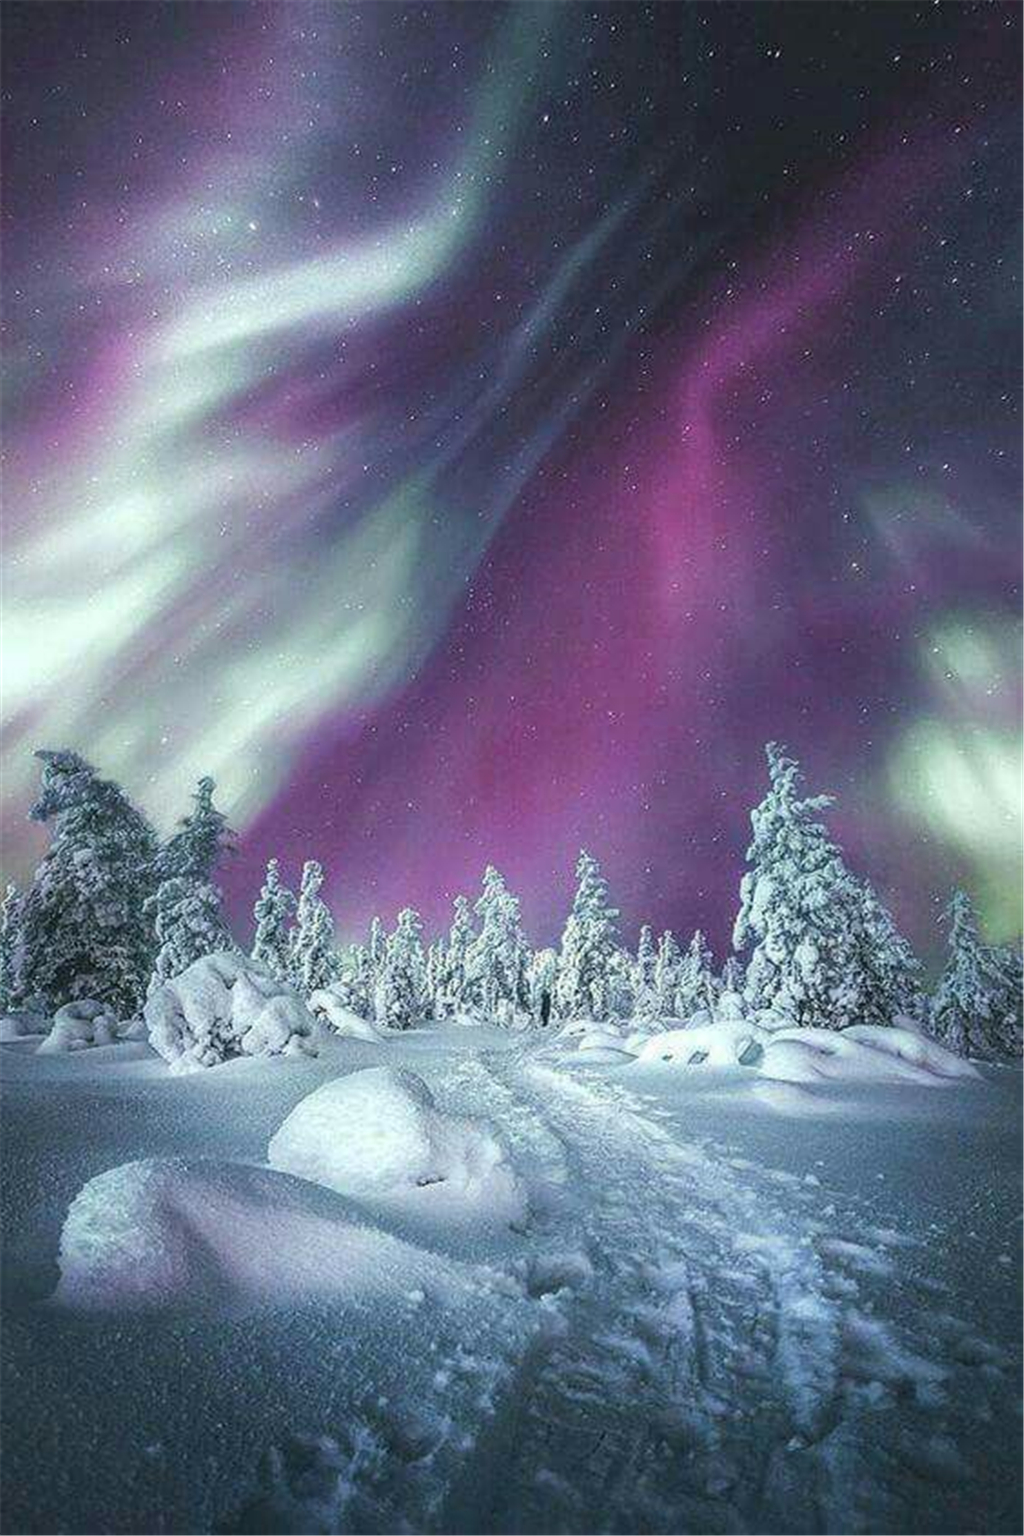 芬兰的奇幻世界—美丽北极光和冰雪奇缘邂逅的冒险旅程!